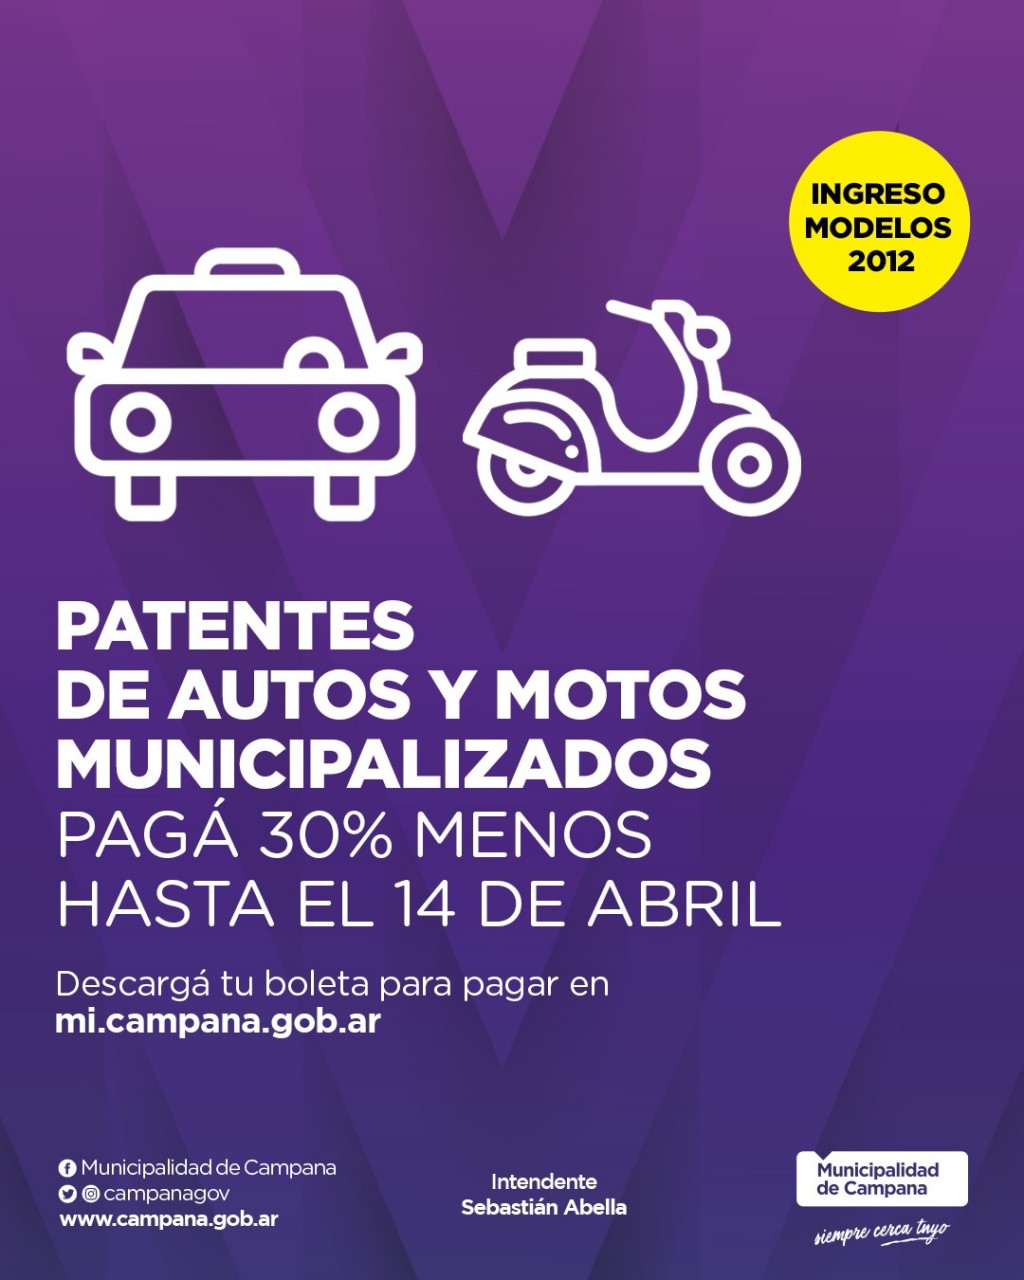 Última semana para realizar el pago anual de las patentes de vehículos municipalizados con descuento  